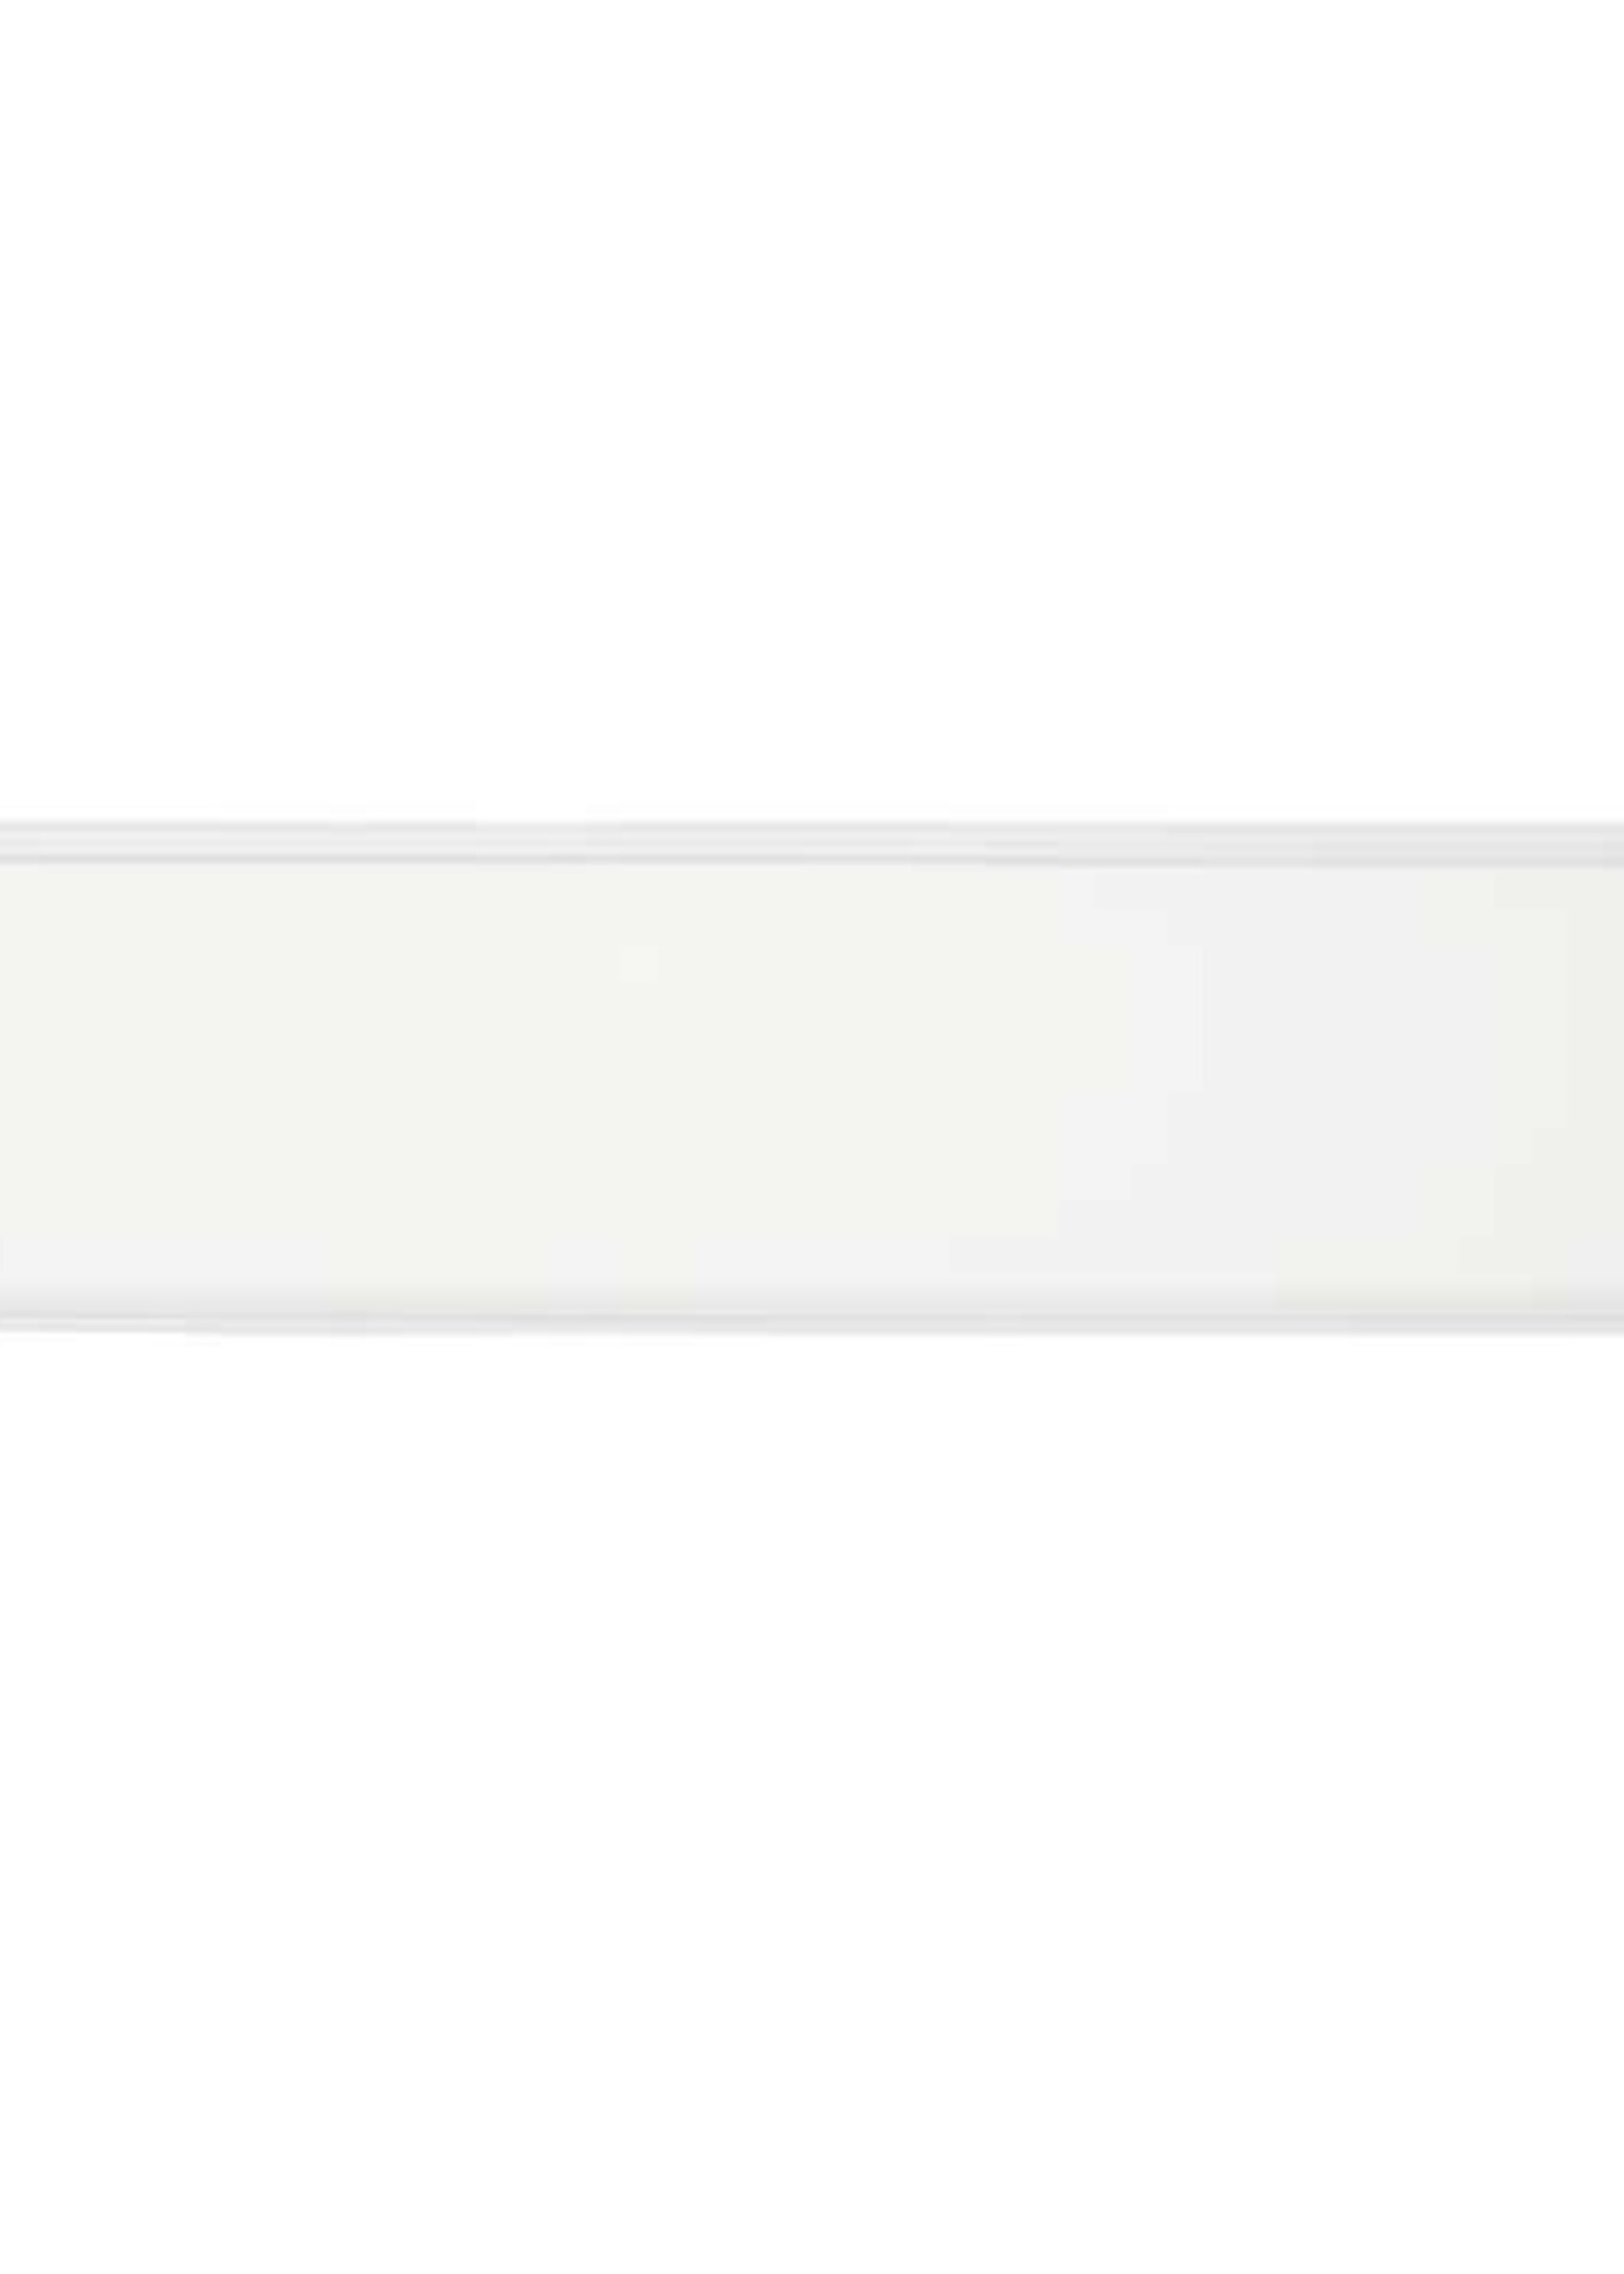 LEDWINKEL-Online WiFi LED Paneel 60x120cm RGB+CCT 40W Edge-lit